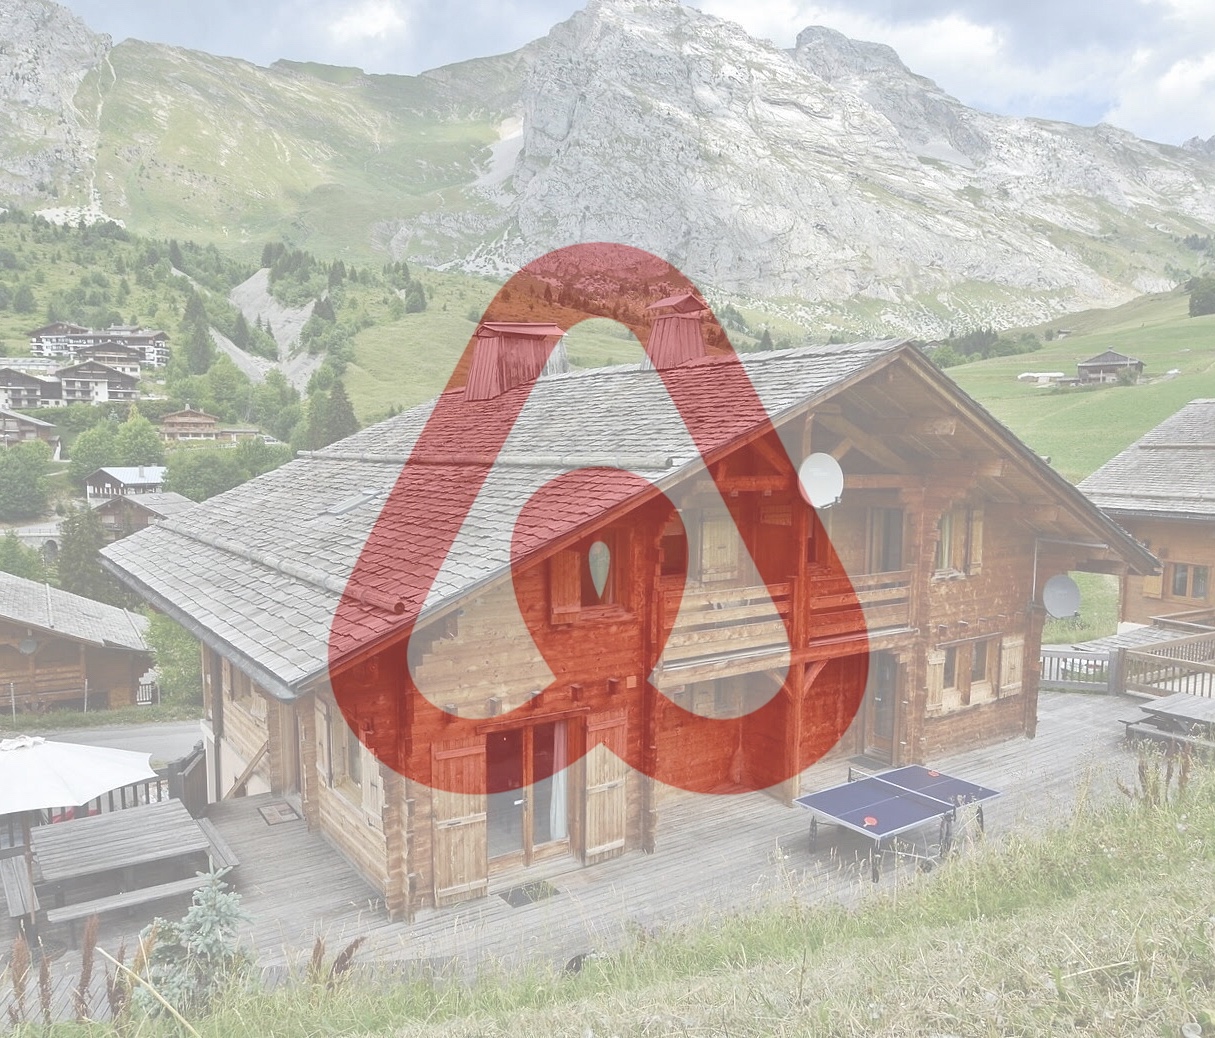 Votre Chalet disponible pour courts séjours sur Airbnb